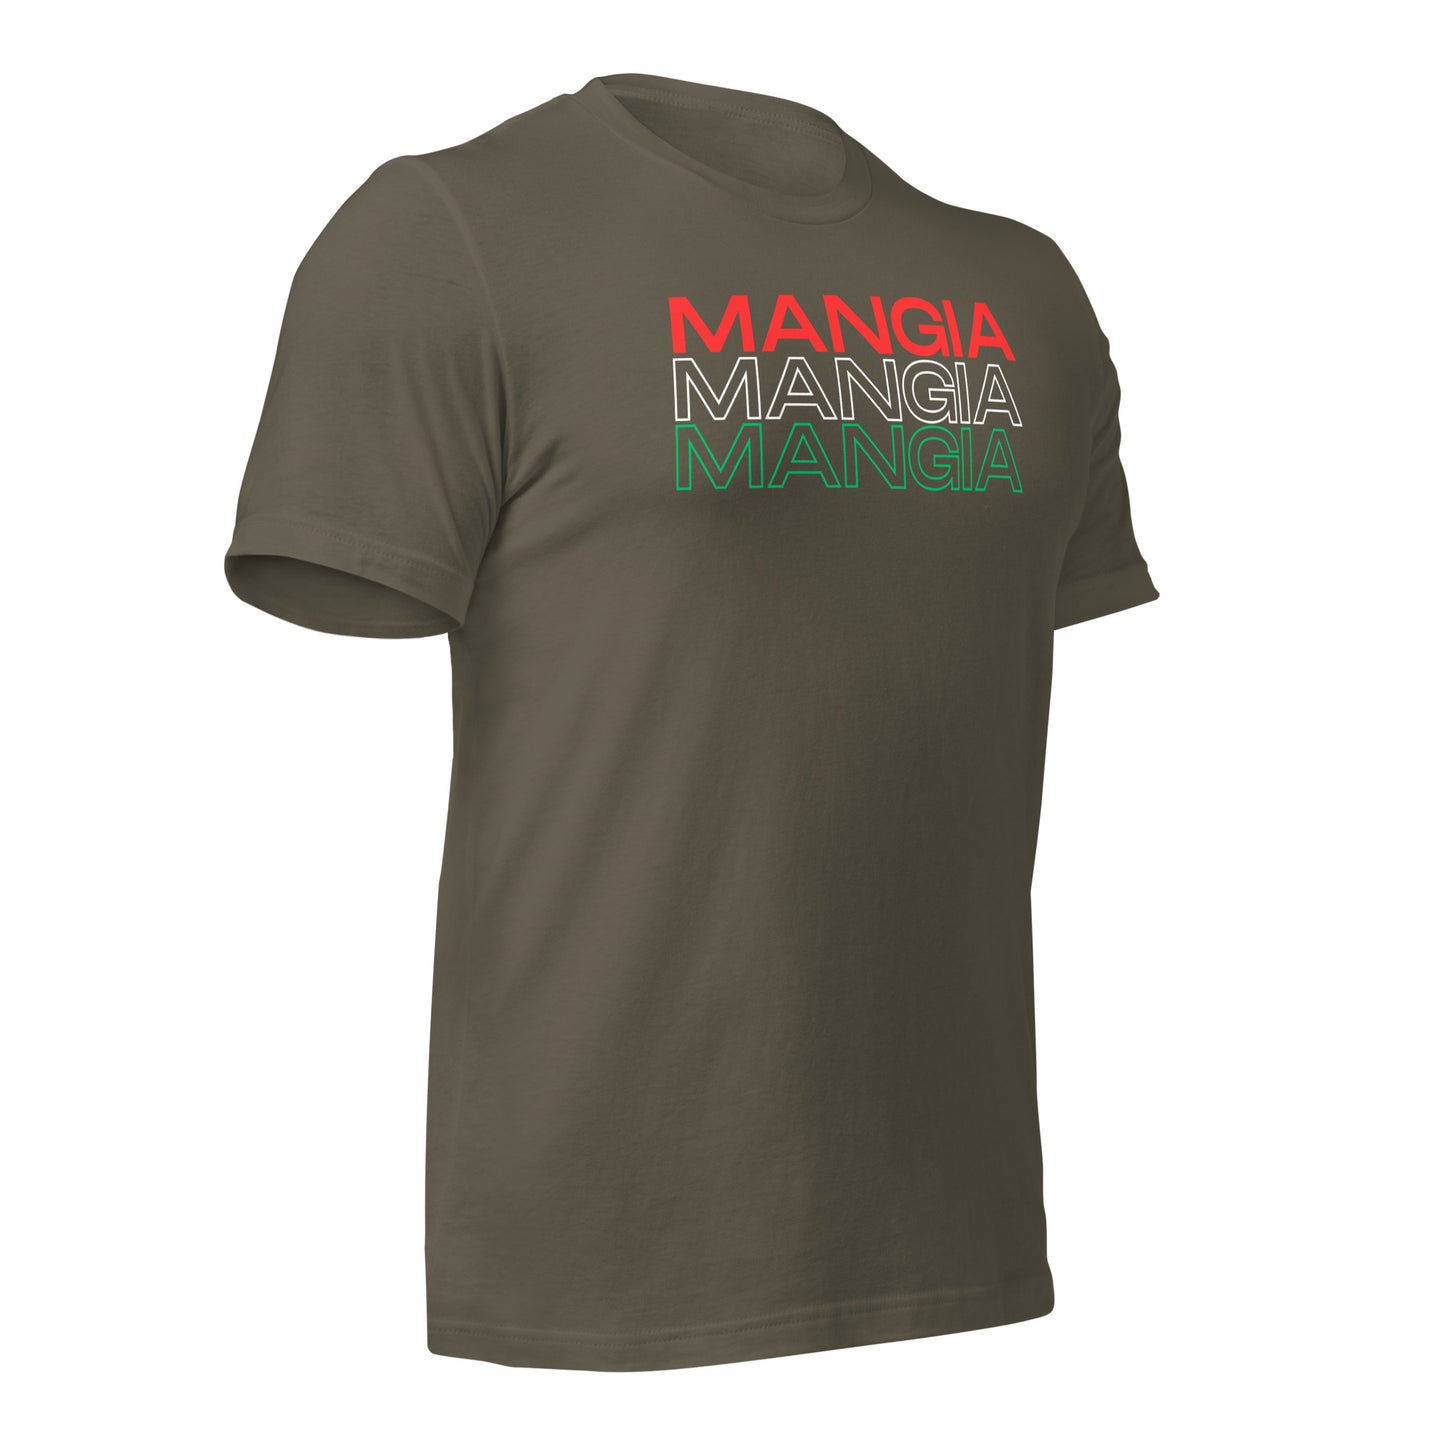 Mangia - Unisex t-shirt